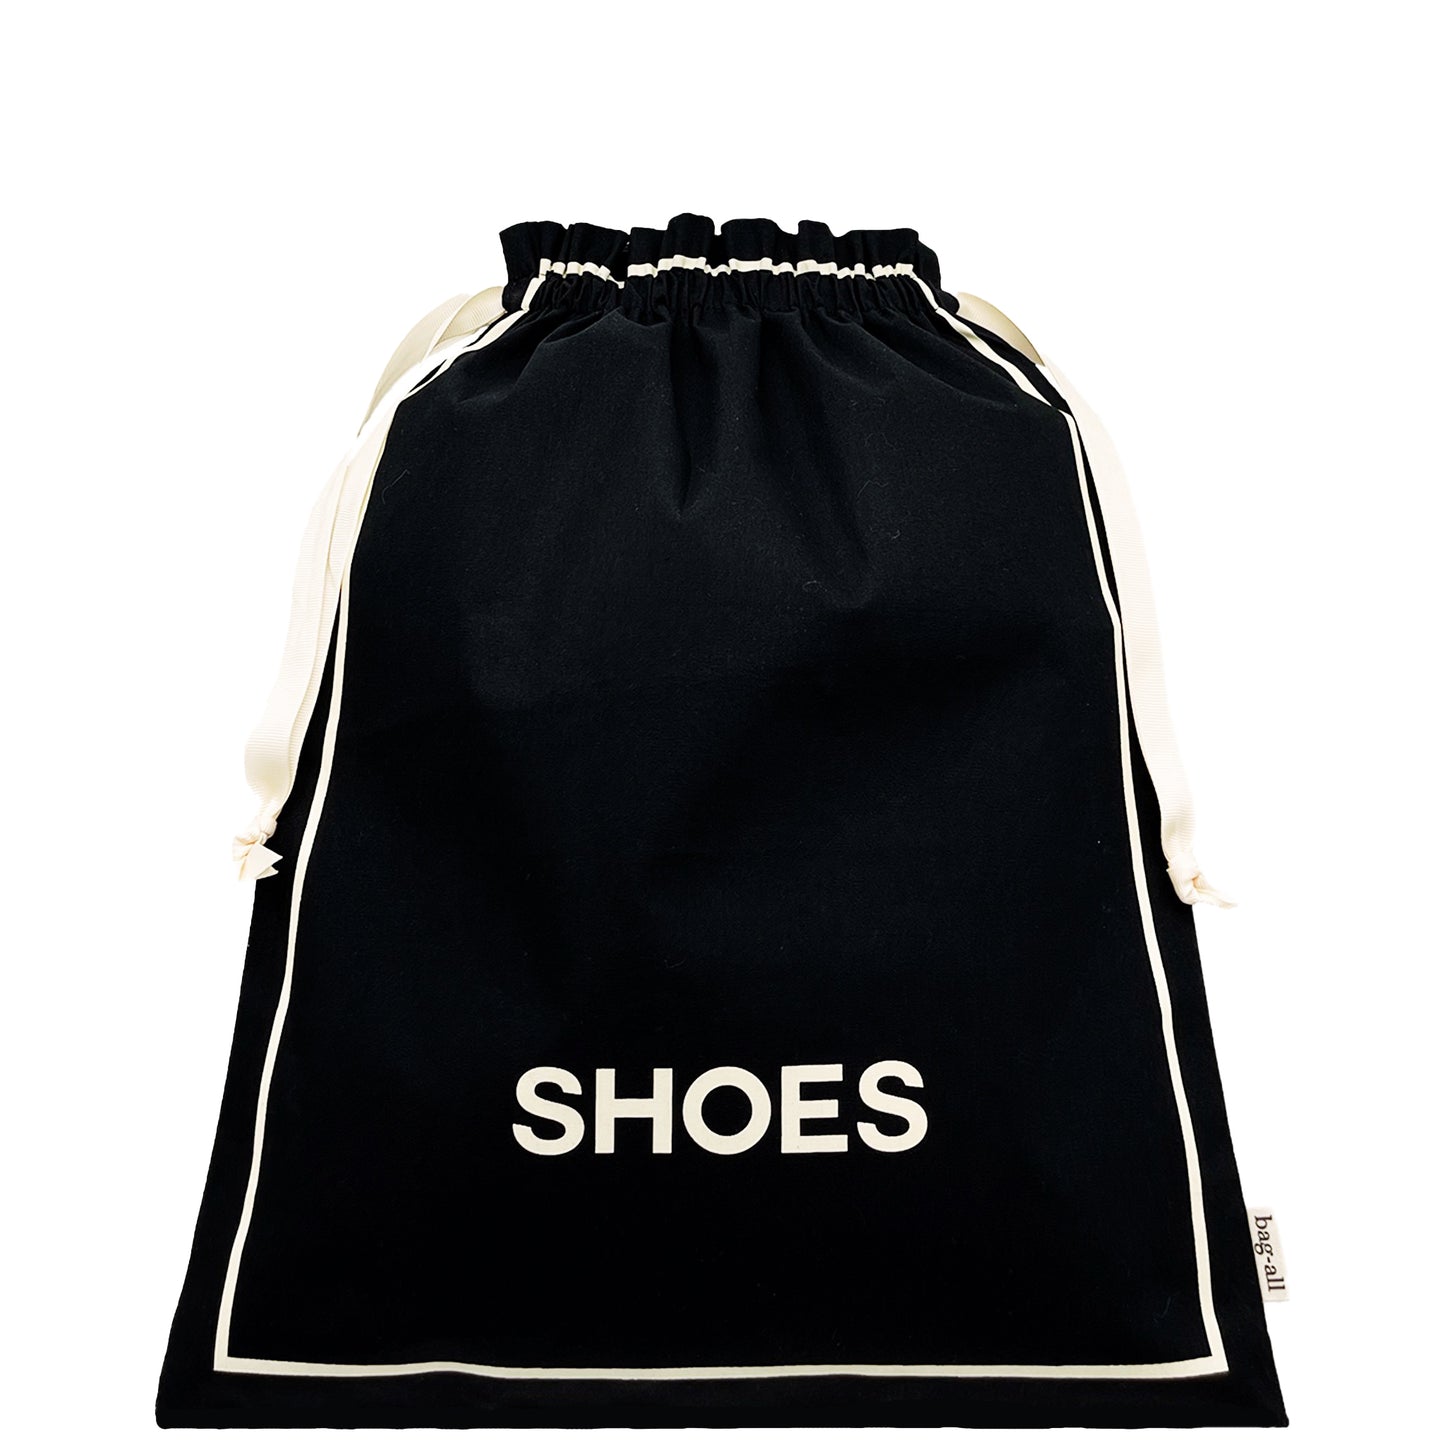 White Sneaker Shoe Bag  Bag-all – Bag-all Europe